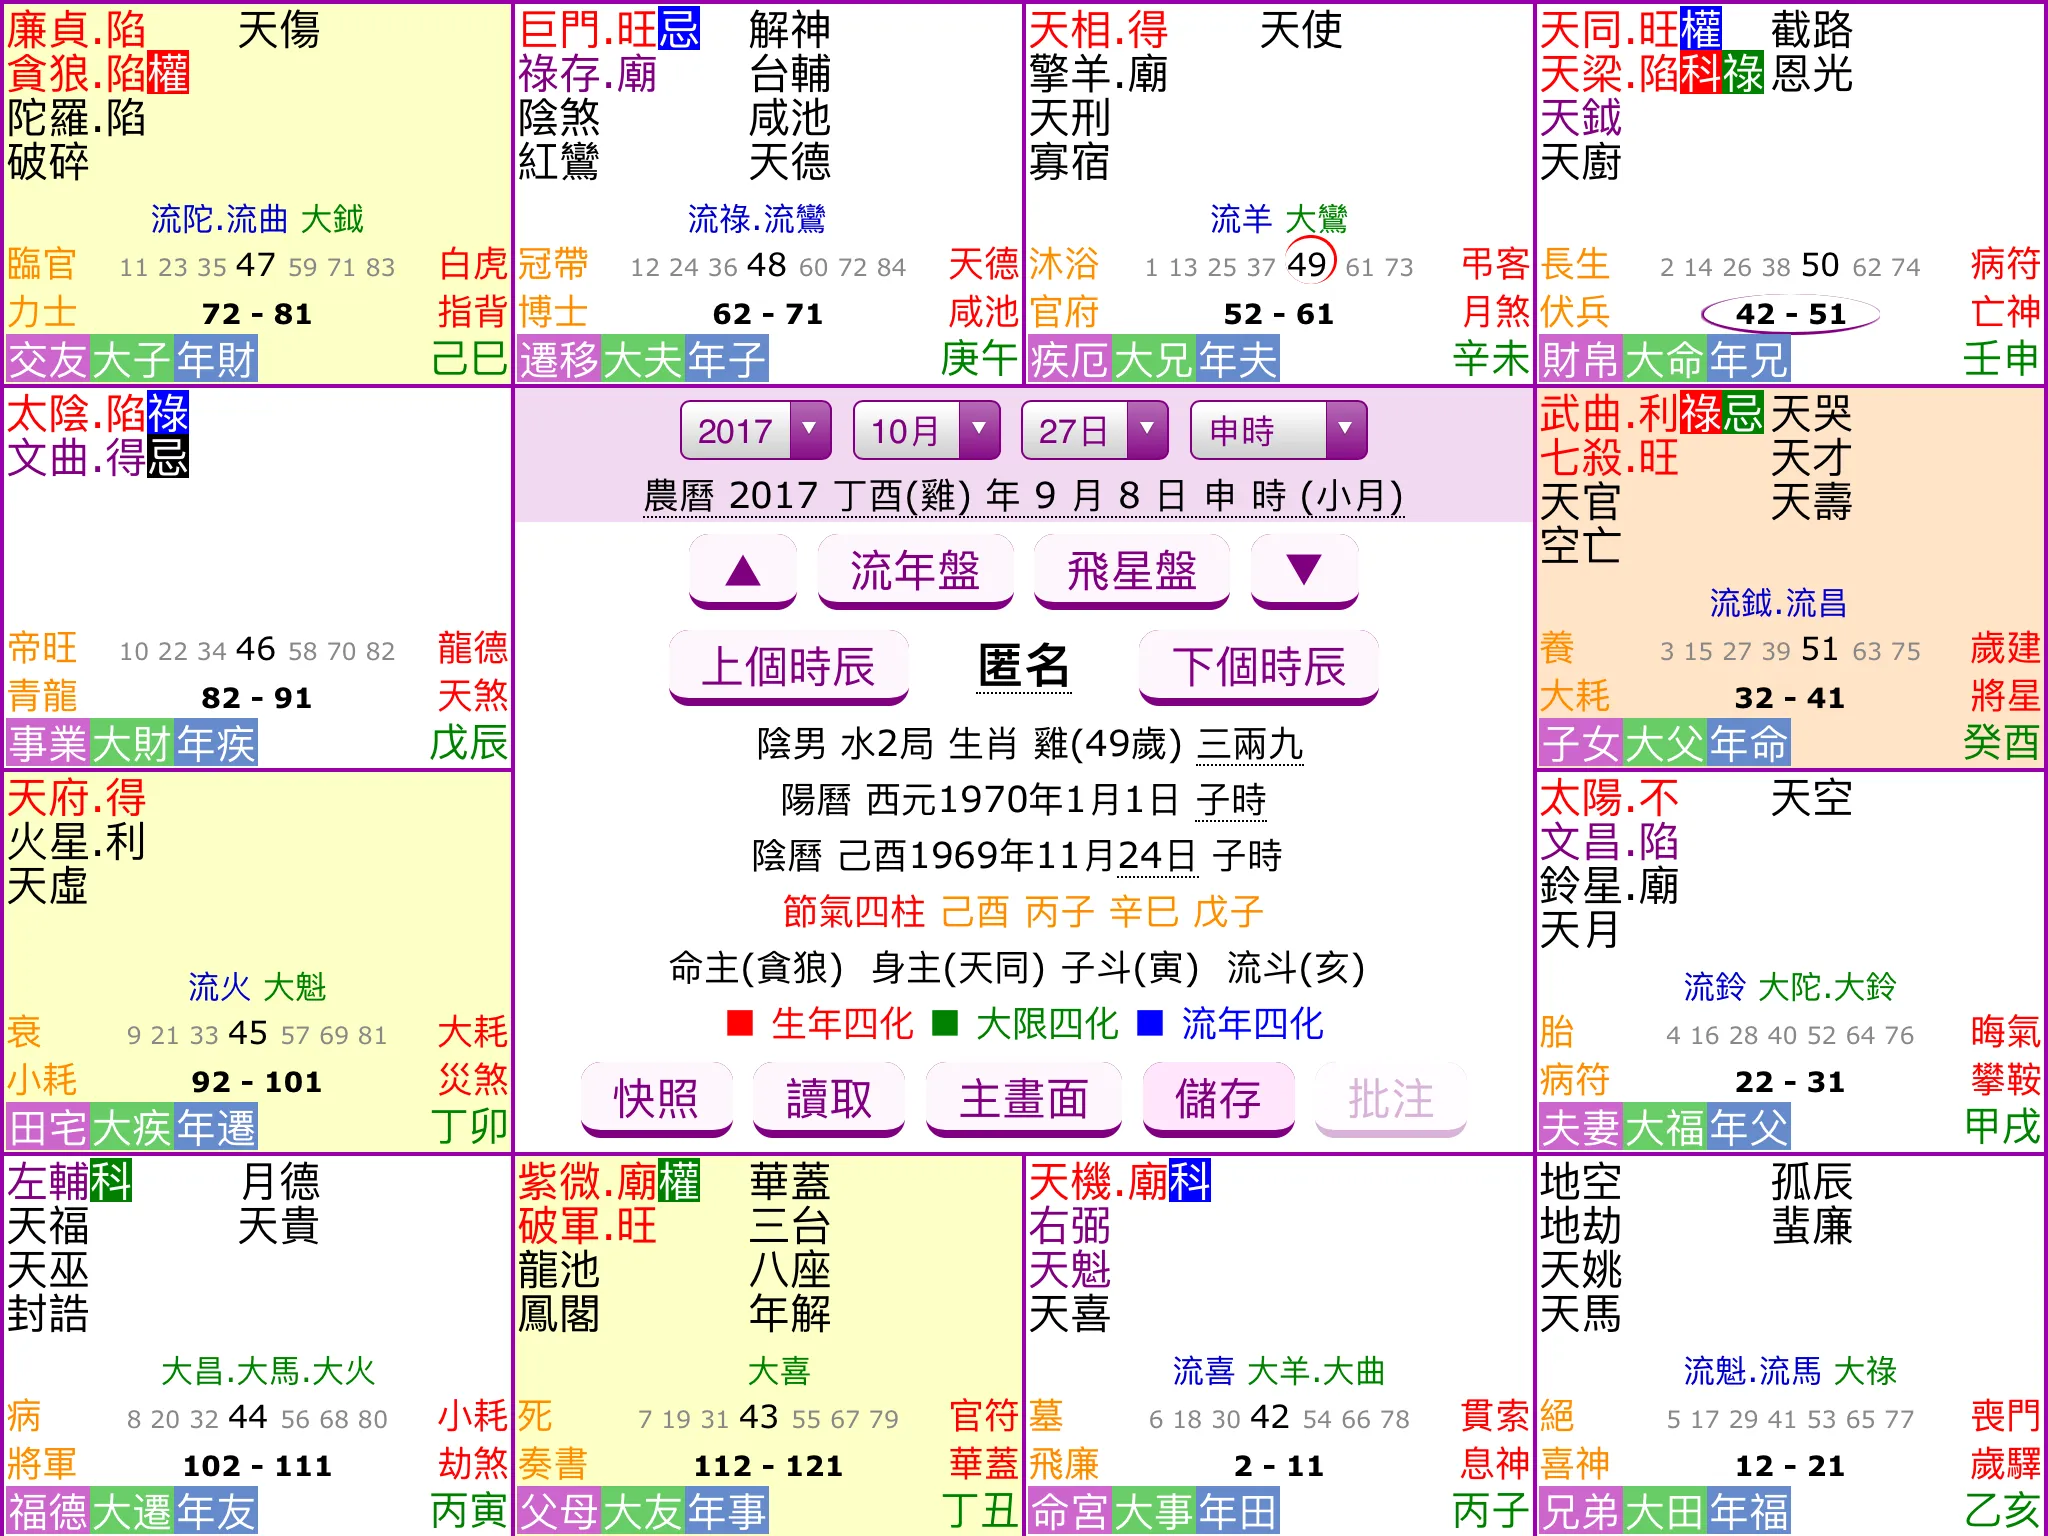 Zi Wei Dou Shu Chart Interpretation